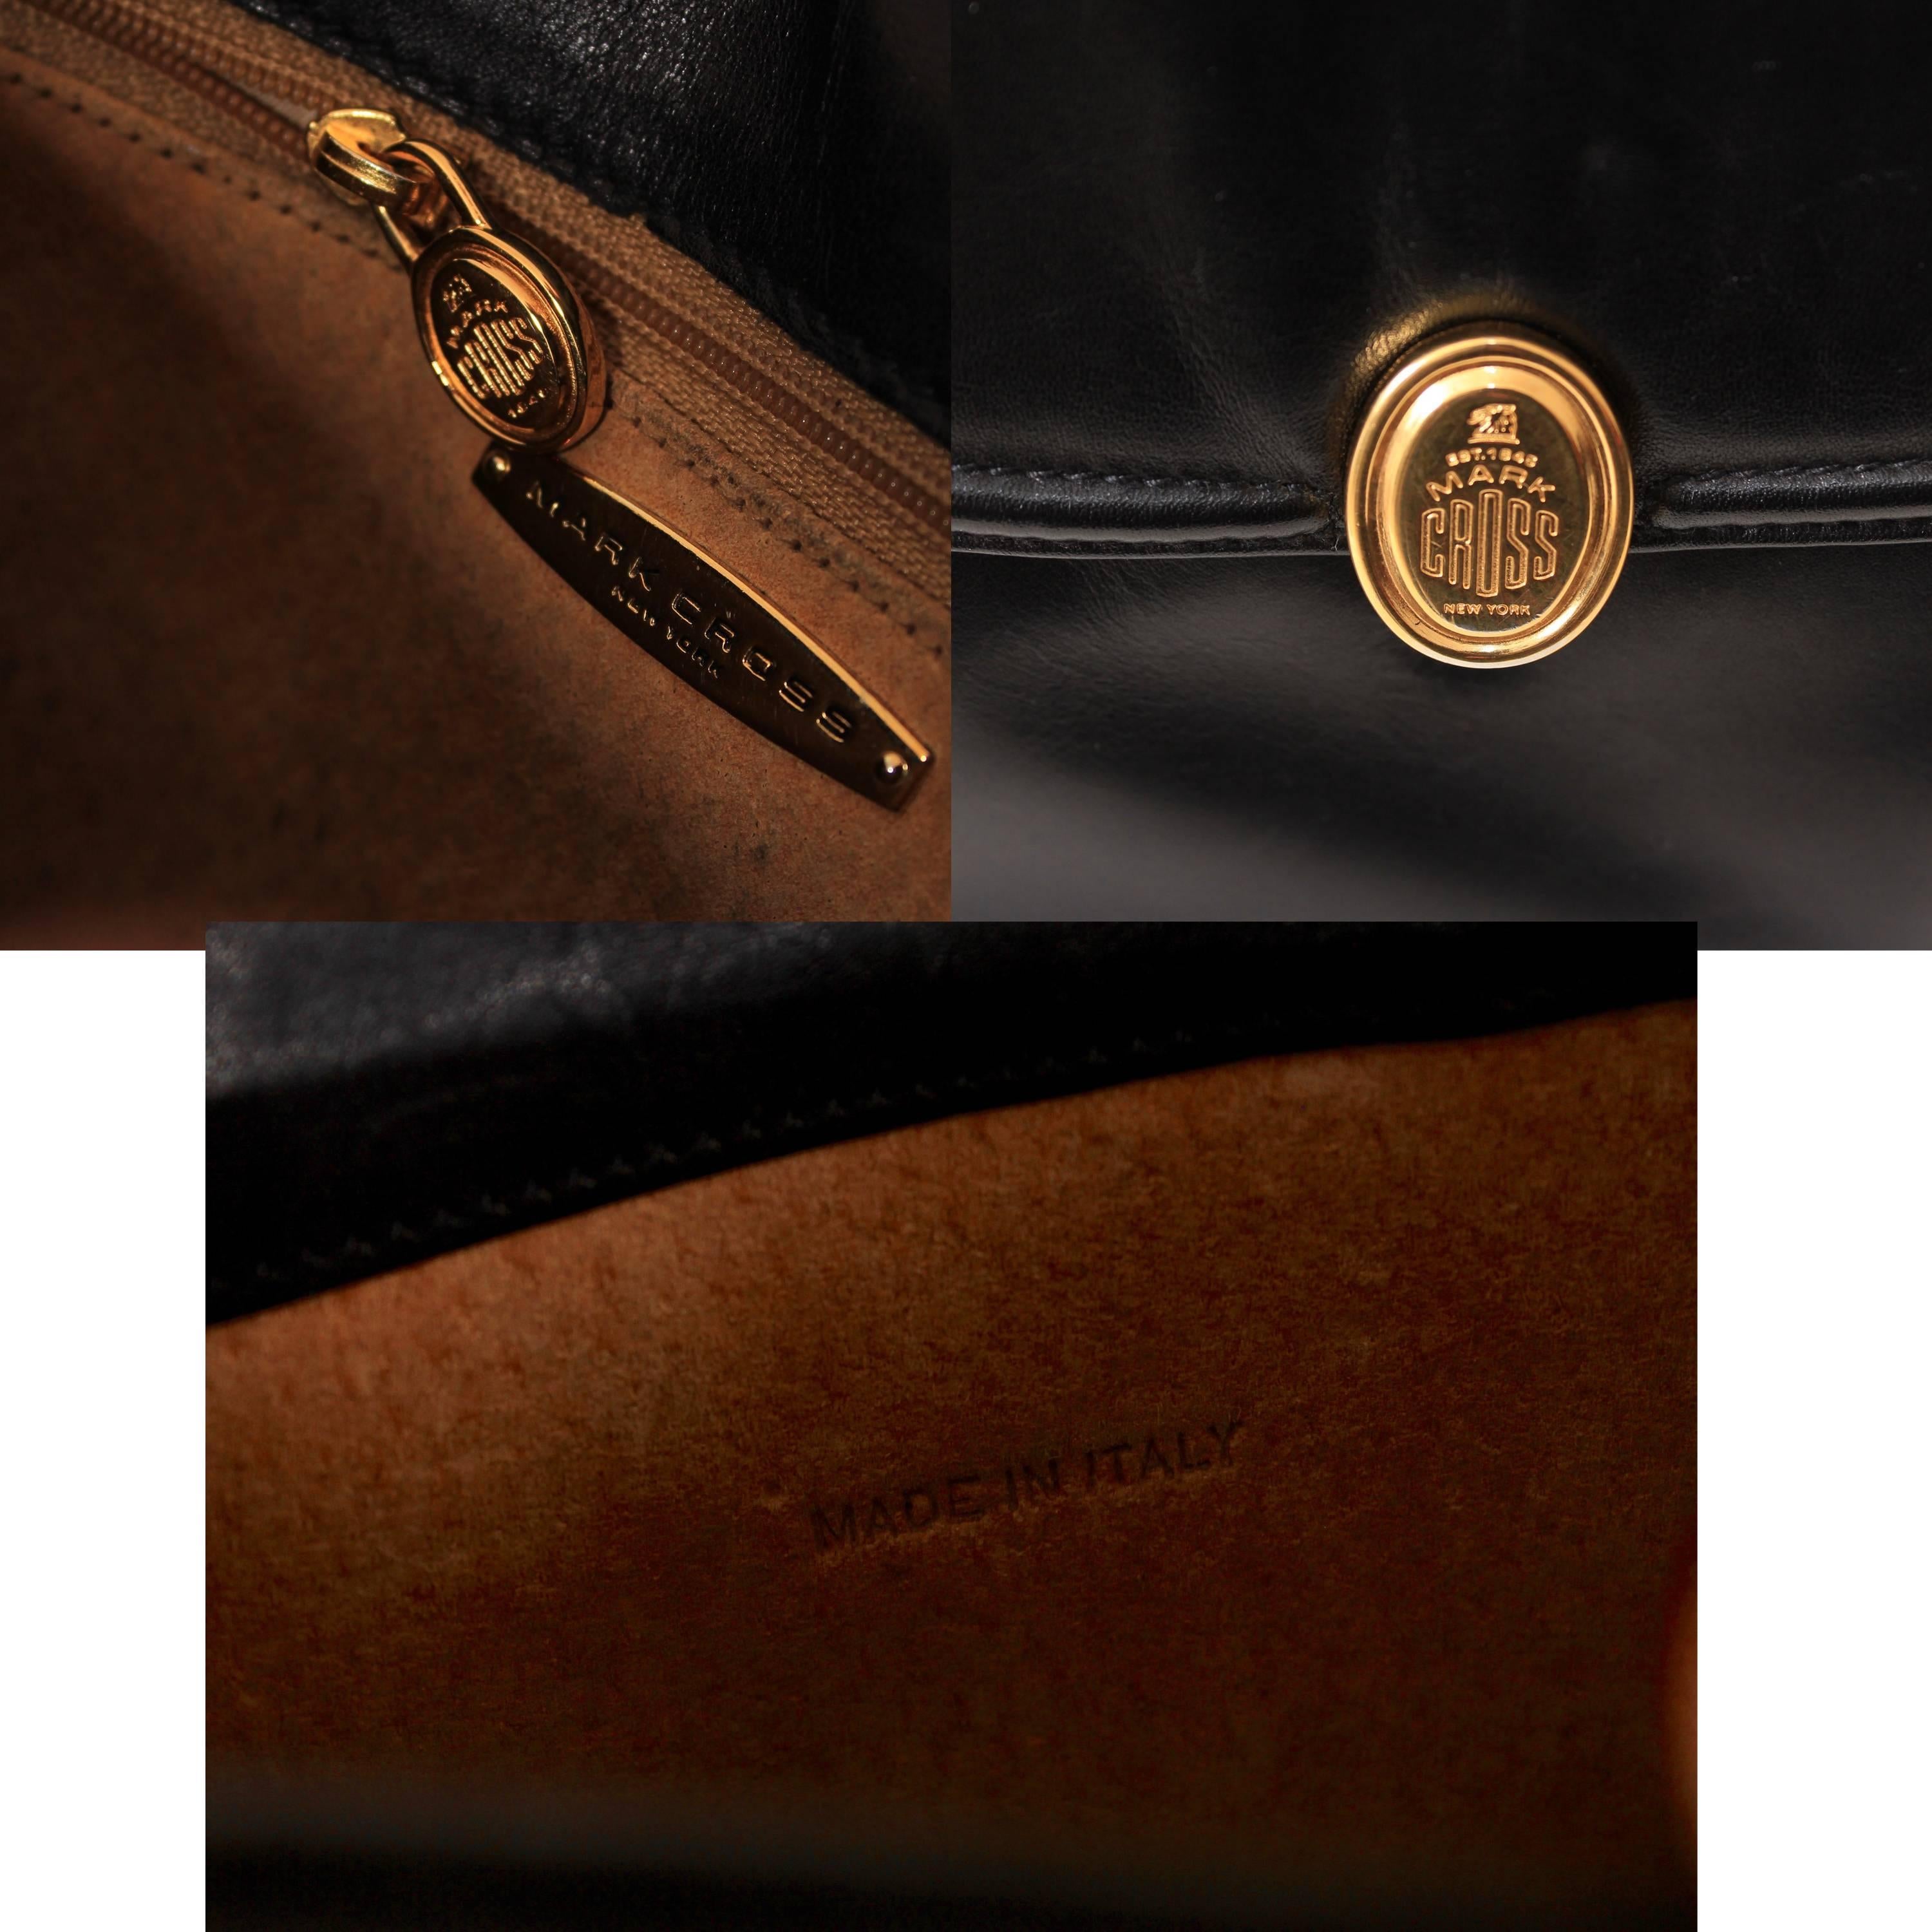 Mark Cross Messenger Bag Cross Body Black Calfskin Leather Made in Italy 6